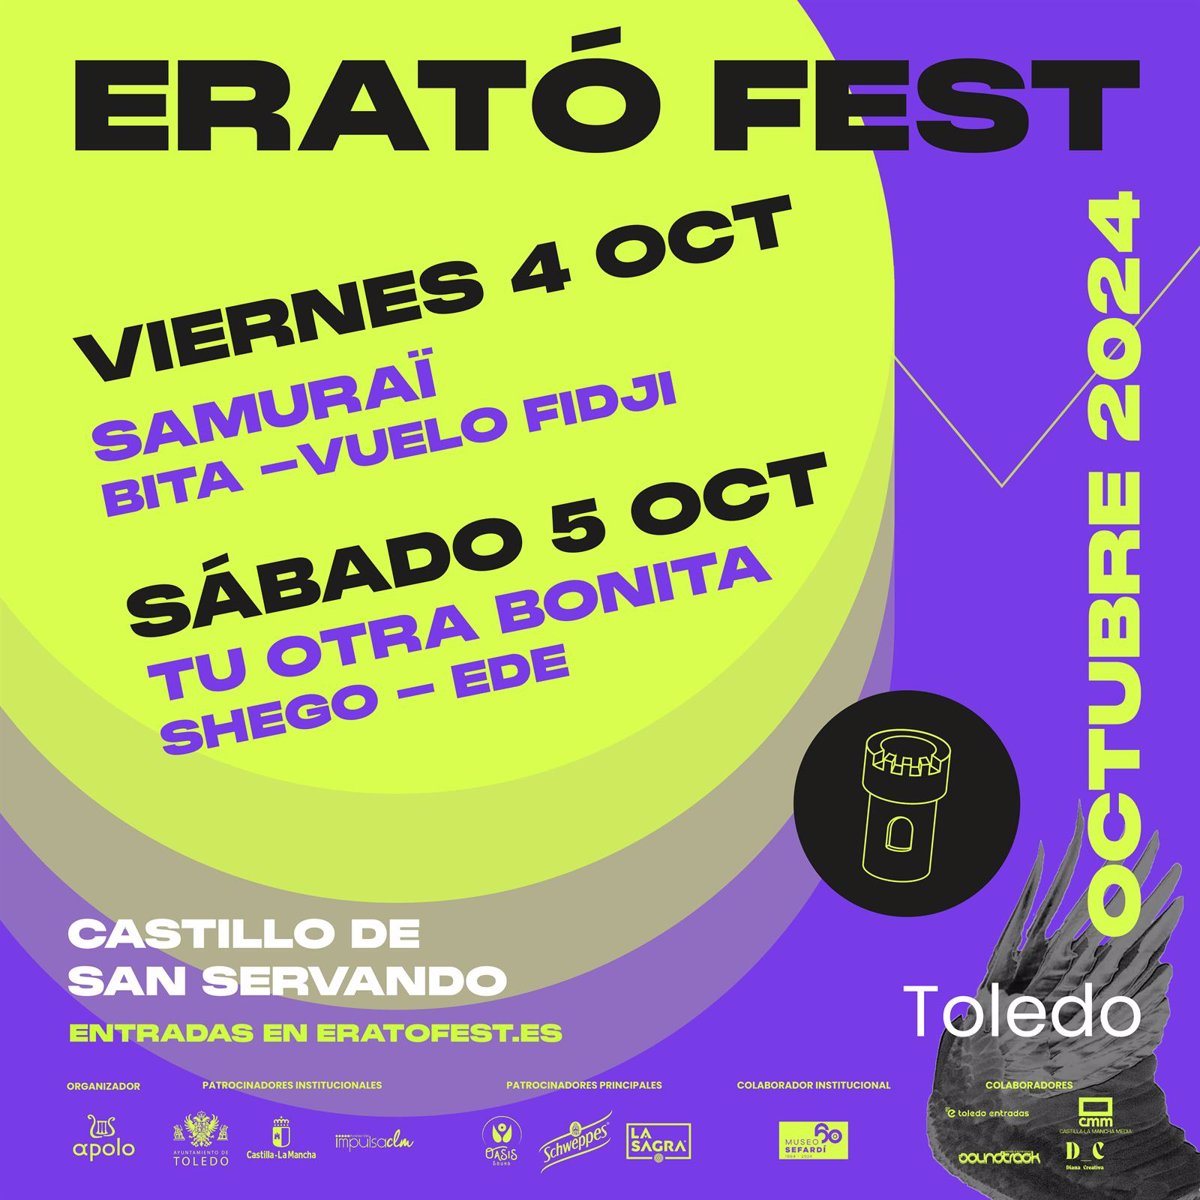 Samuraï y Tu Otra Bonita, entre los grupos que tocarán en el festival Erató Fest en Toledo en octubre